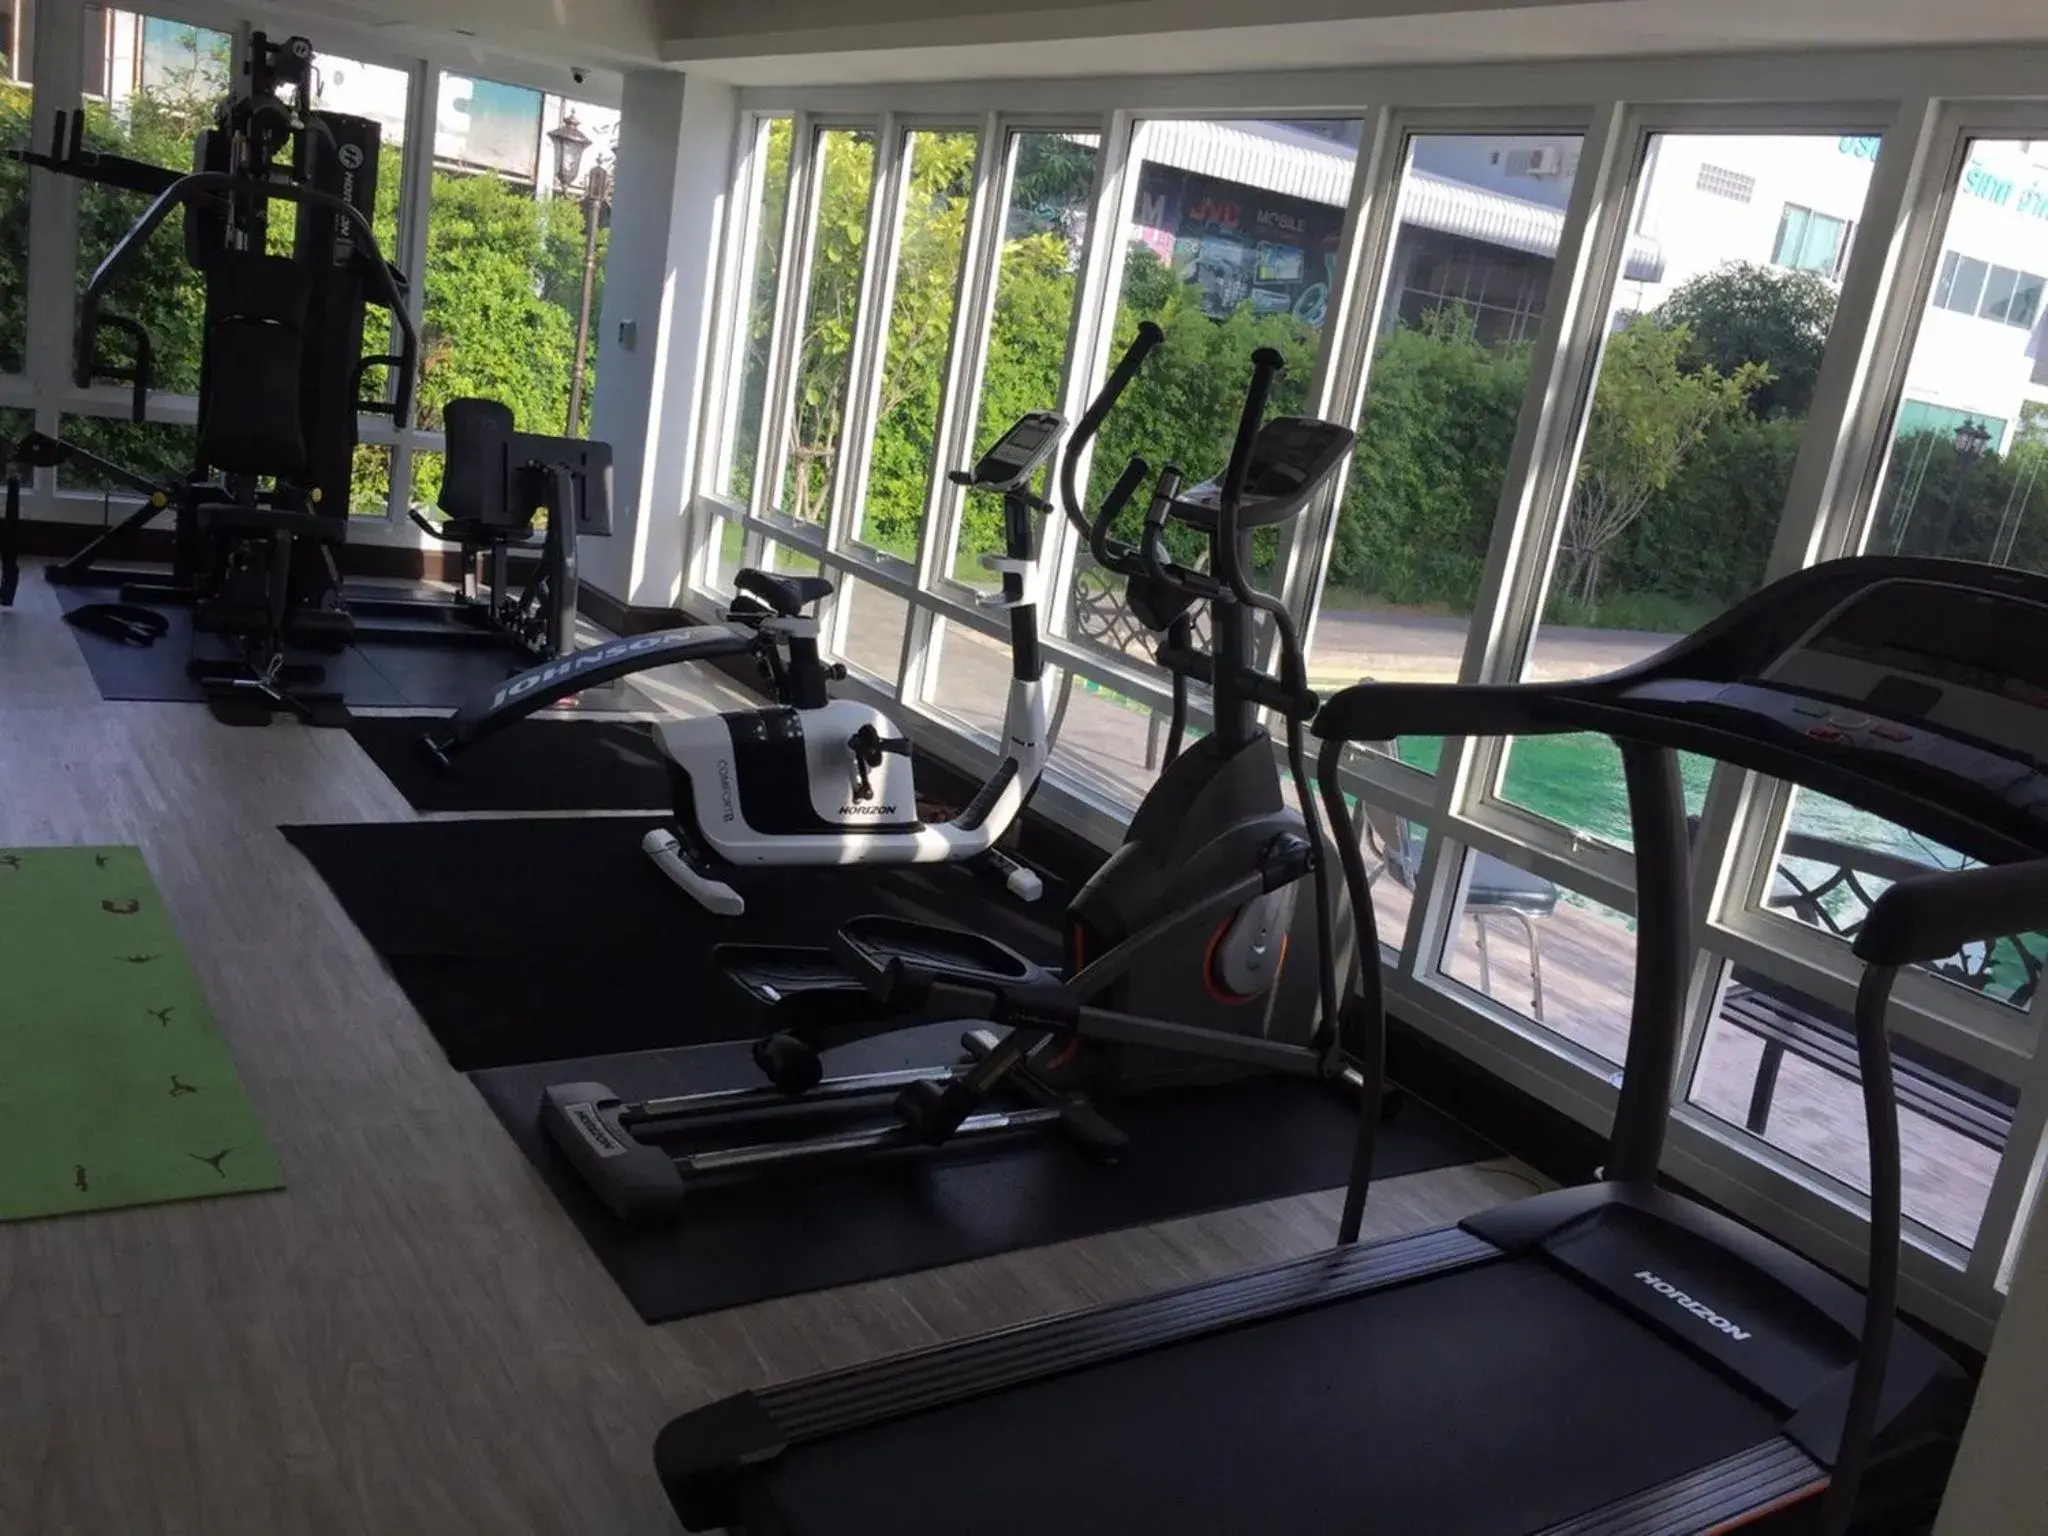 Fitness centre/facilities, Fitness Center/Facilities in Vassana Design Hotel